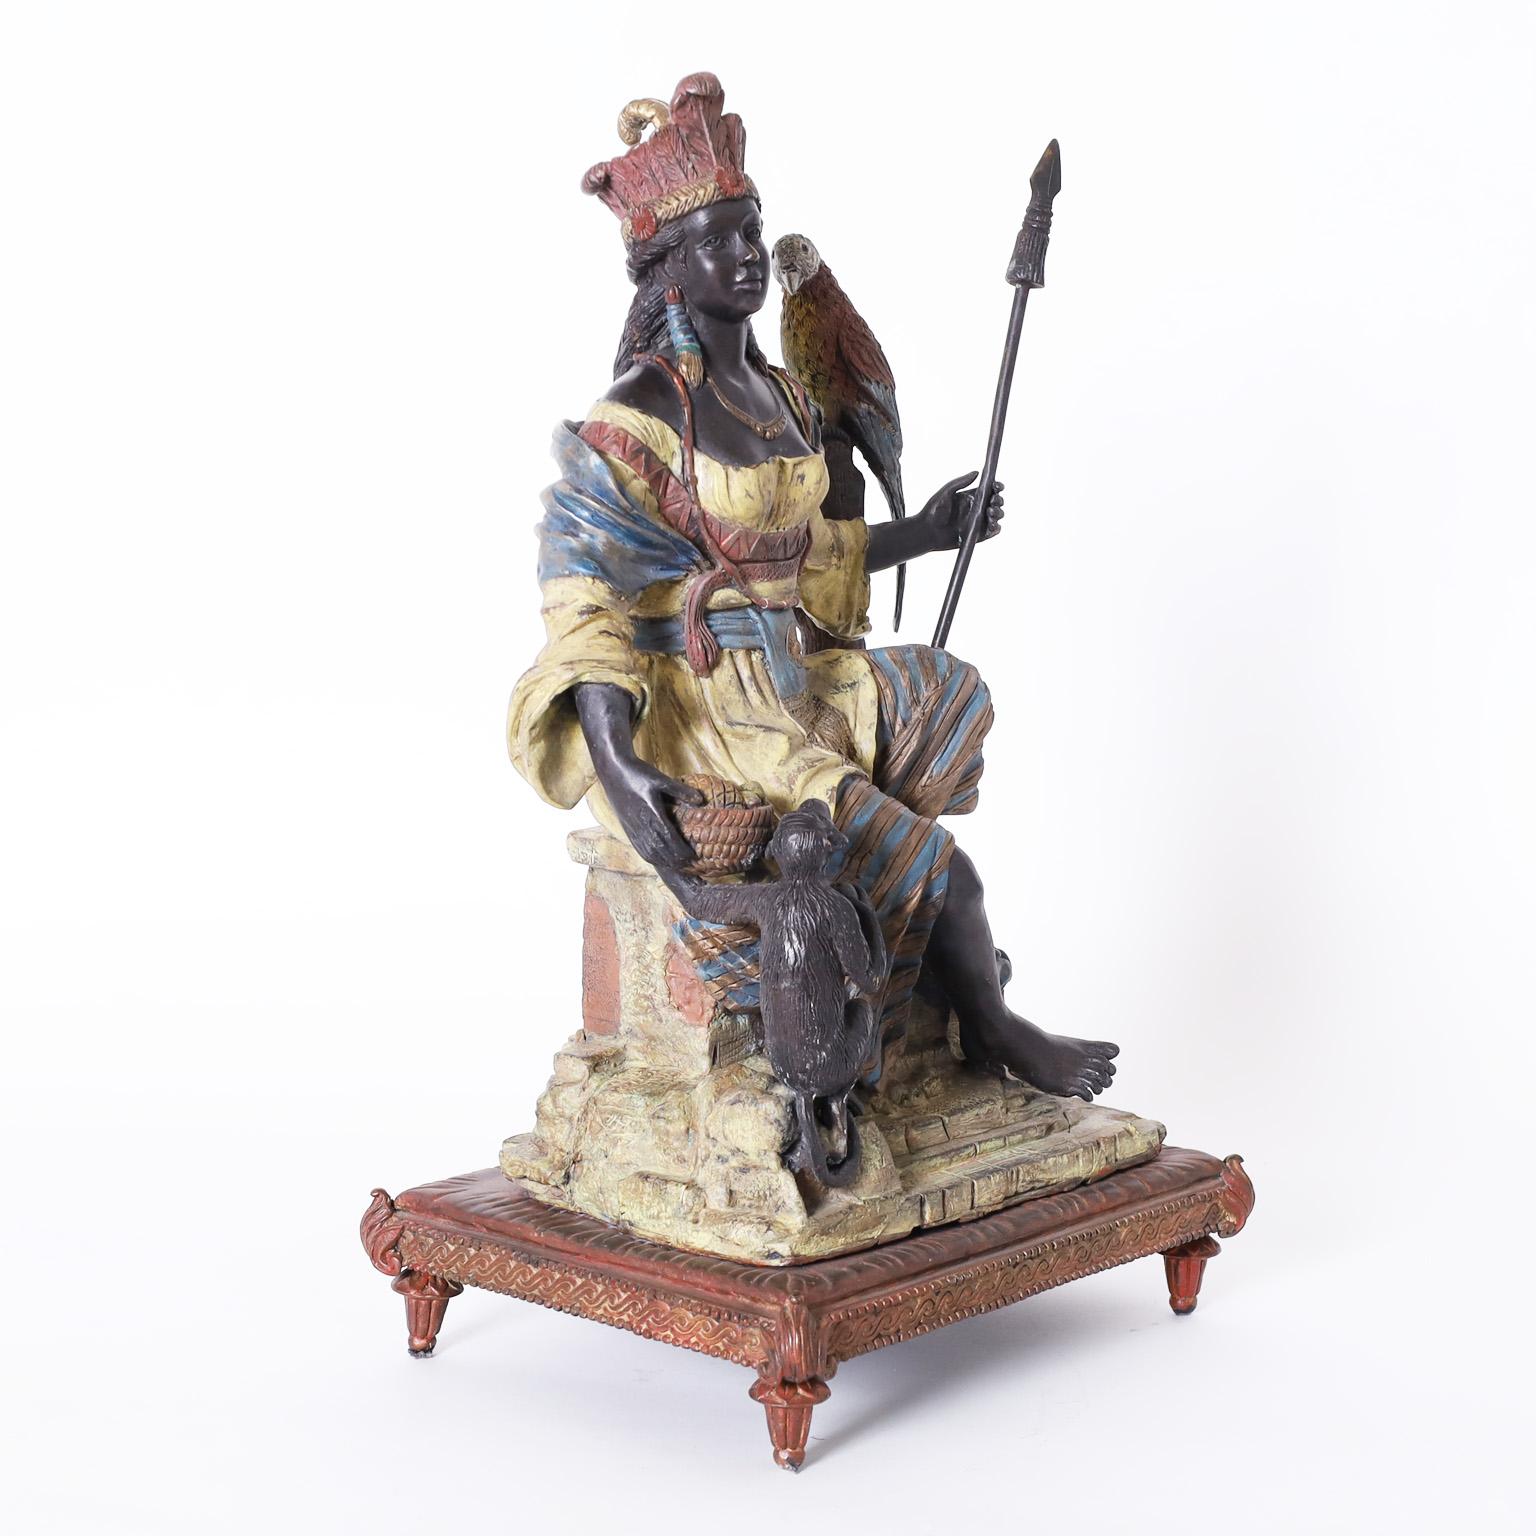 Bronze orientaliste ancien avec une composition impressionnante représentant une femme guerrière avec une lance, un perroquet sur une souche d'arbre, et un singe avec une coupe de fruits, le tout avec la finition originale peinte à froid.